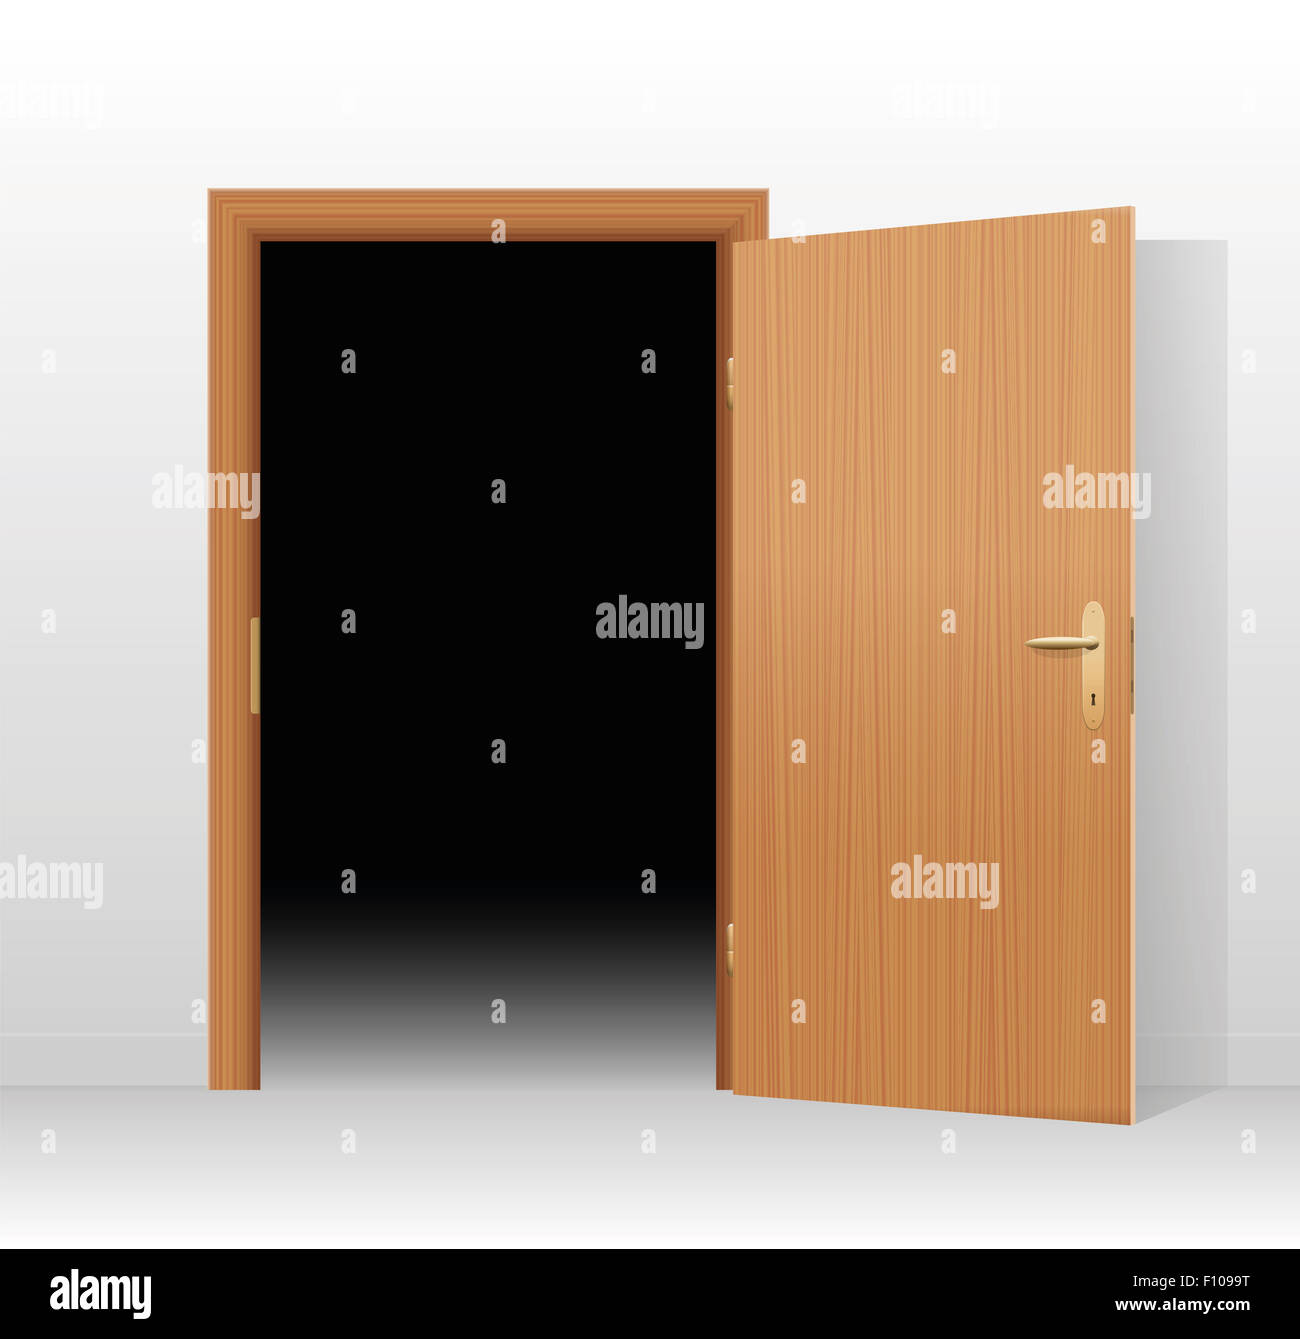 Illustration of a wide open door to a dark unlit room. Stock Photo